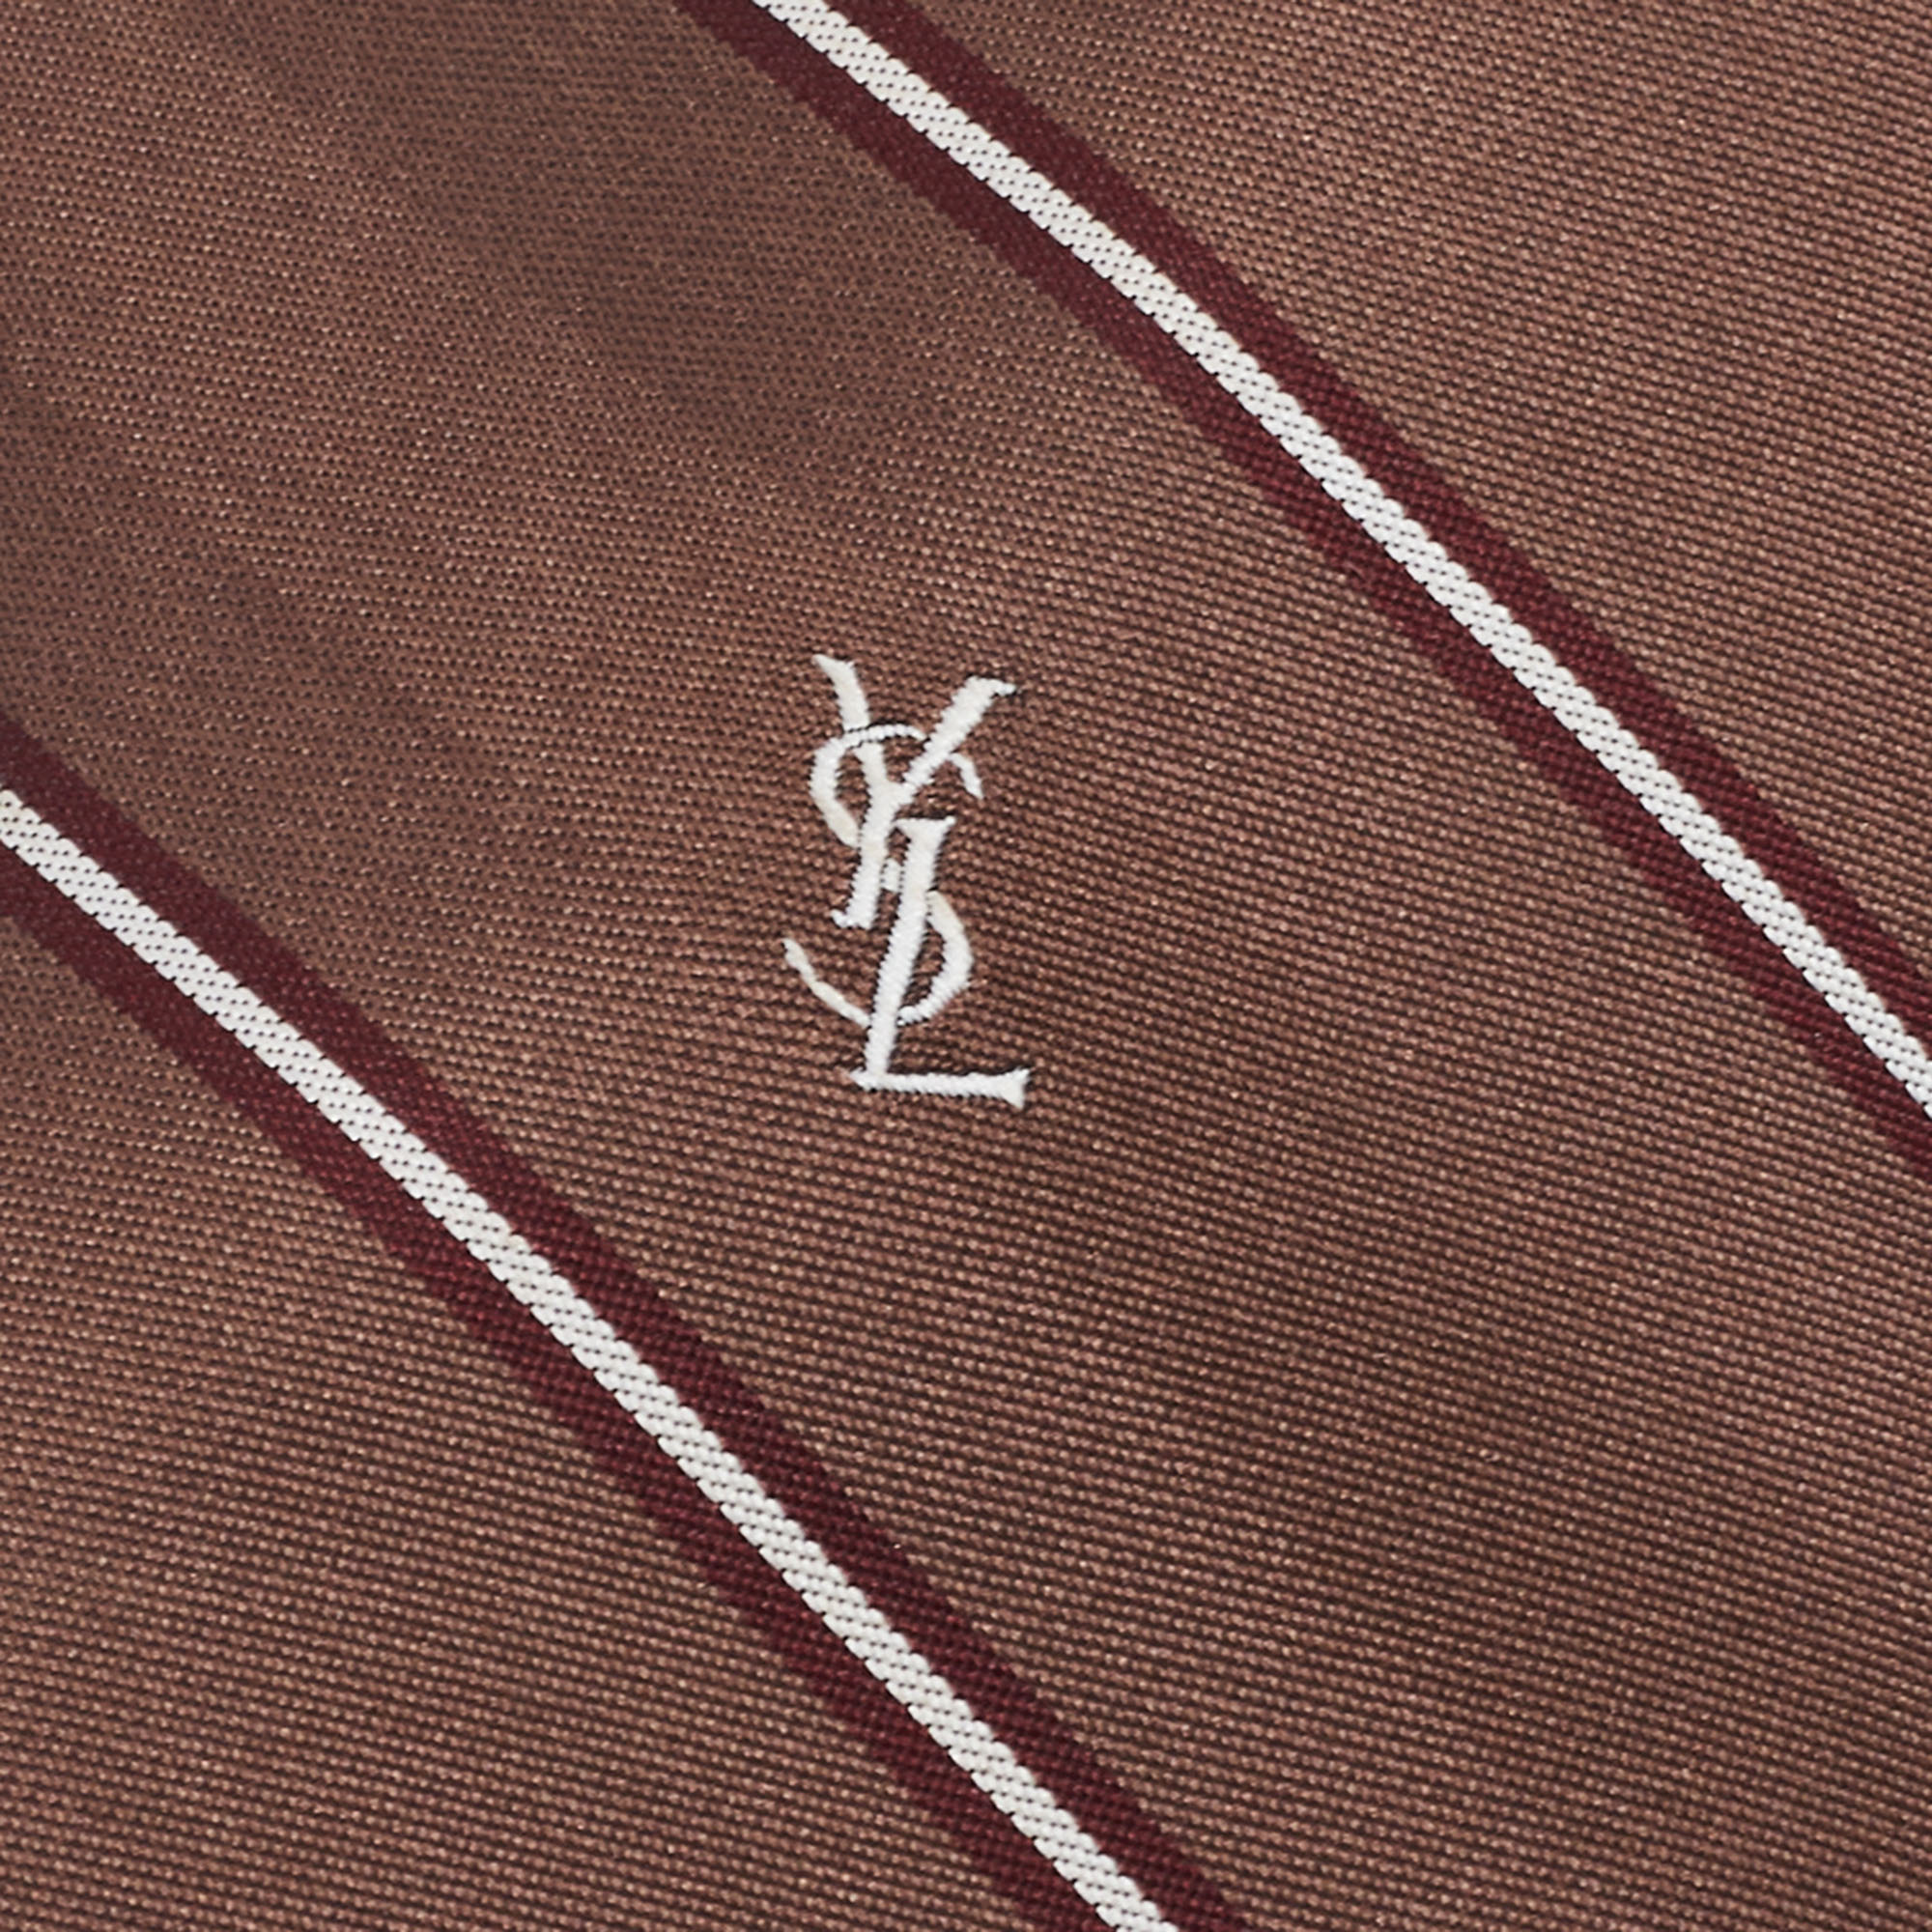 

Yves Saint Laurent Vintage Brown Patterned Jacquard Silk Tie